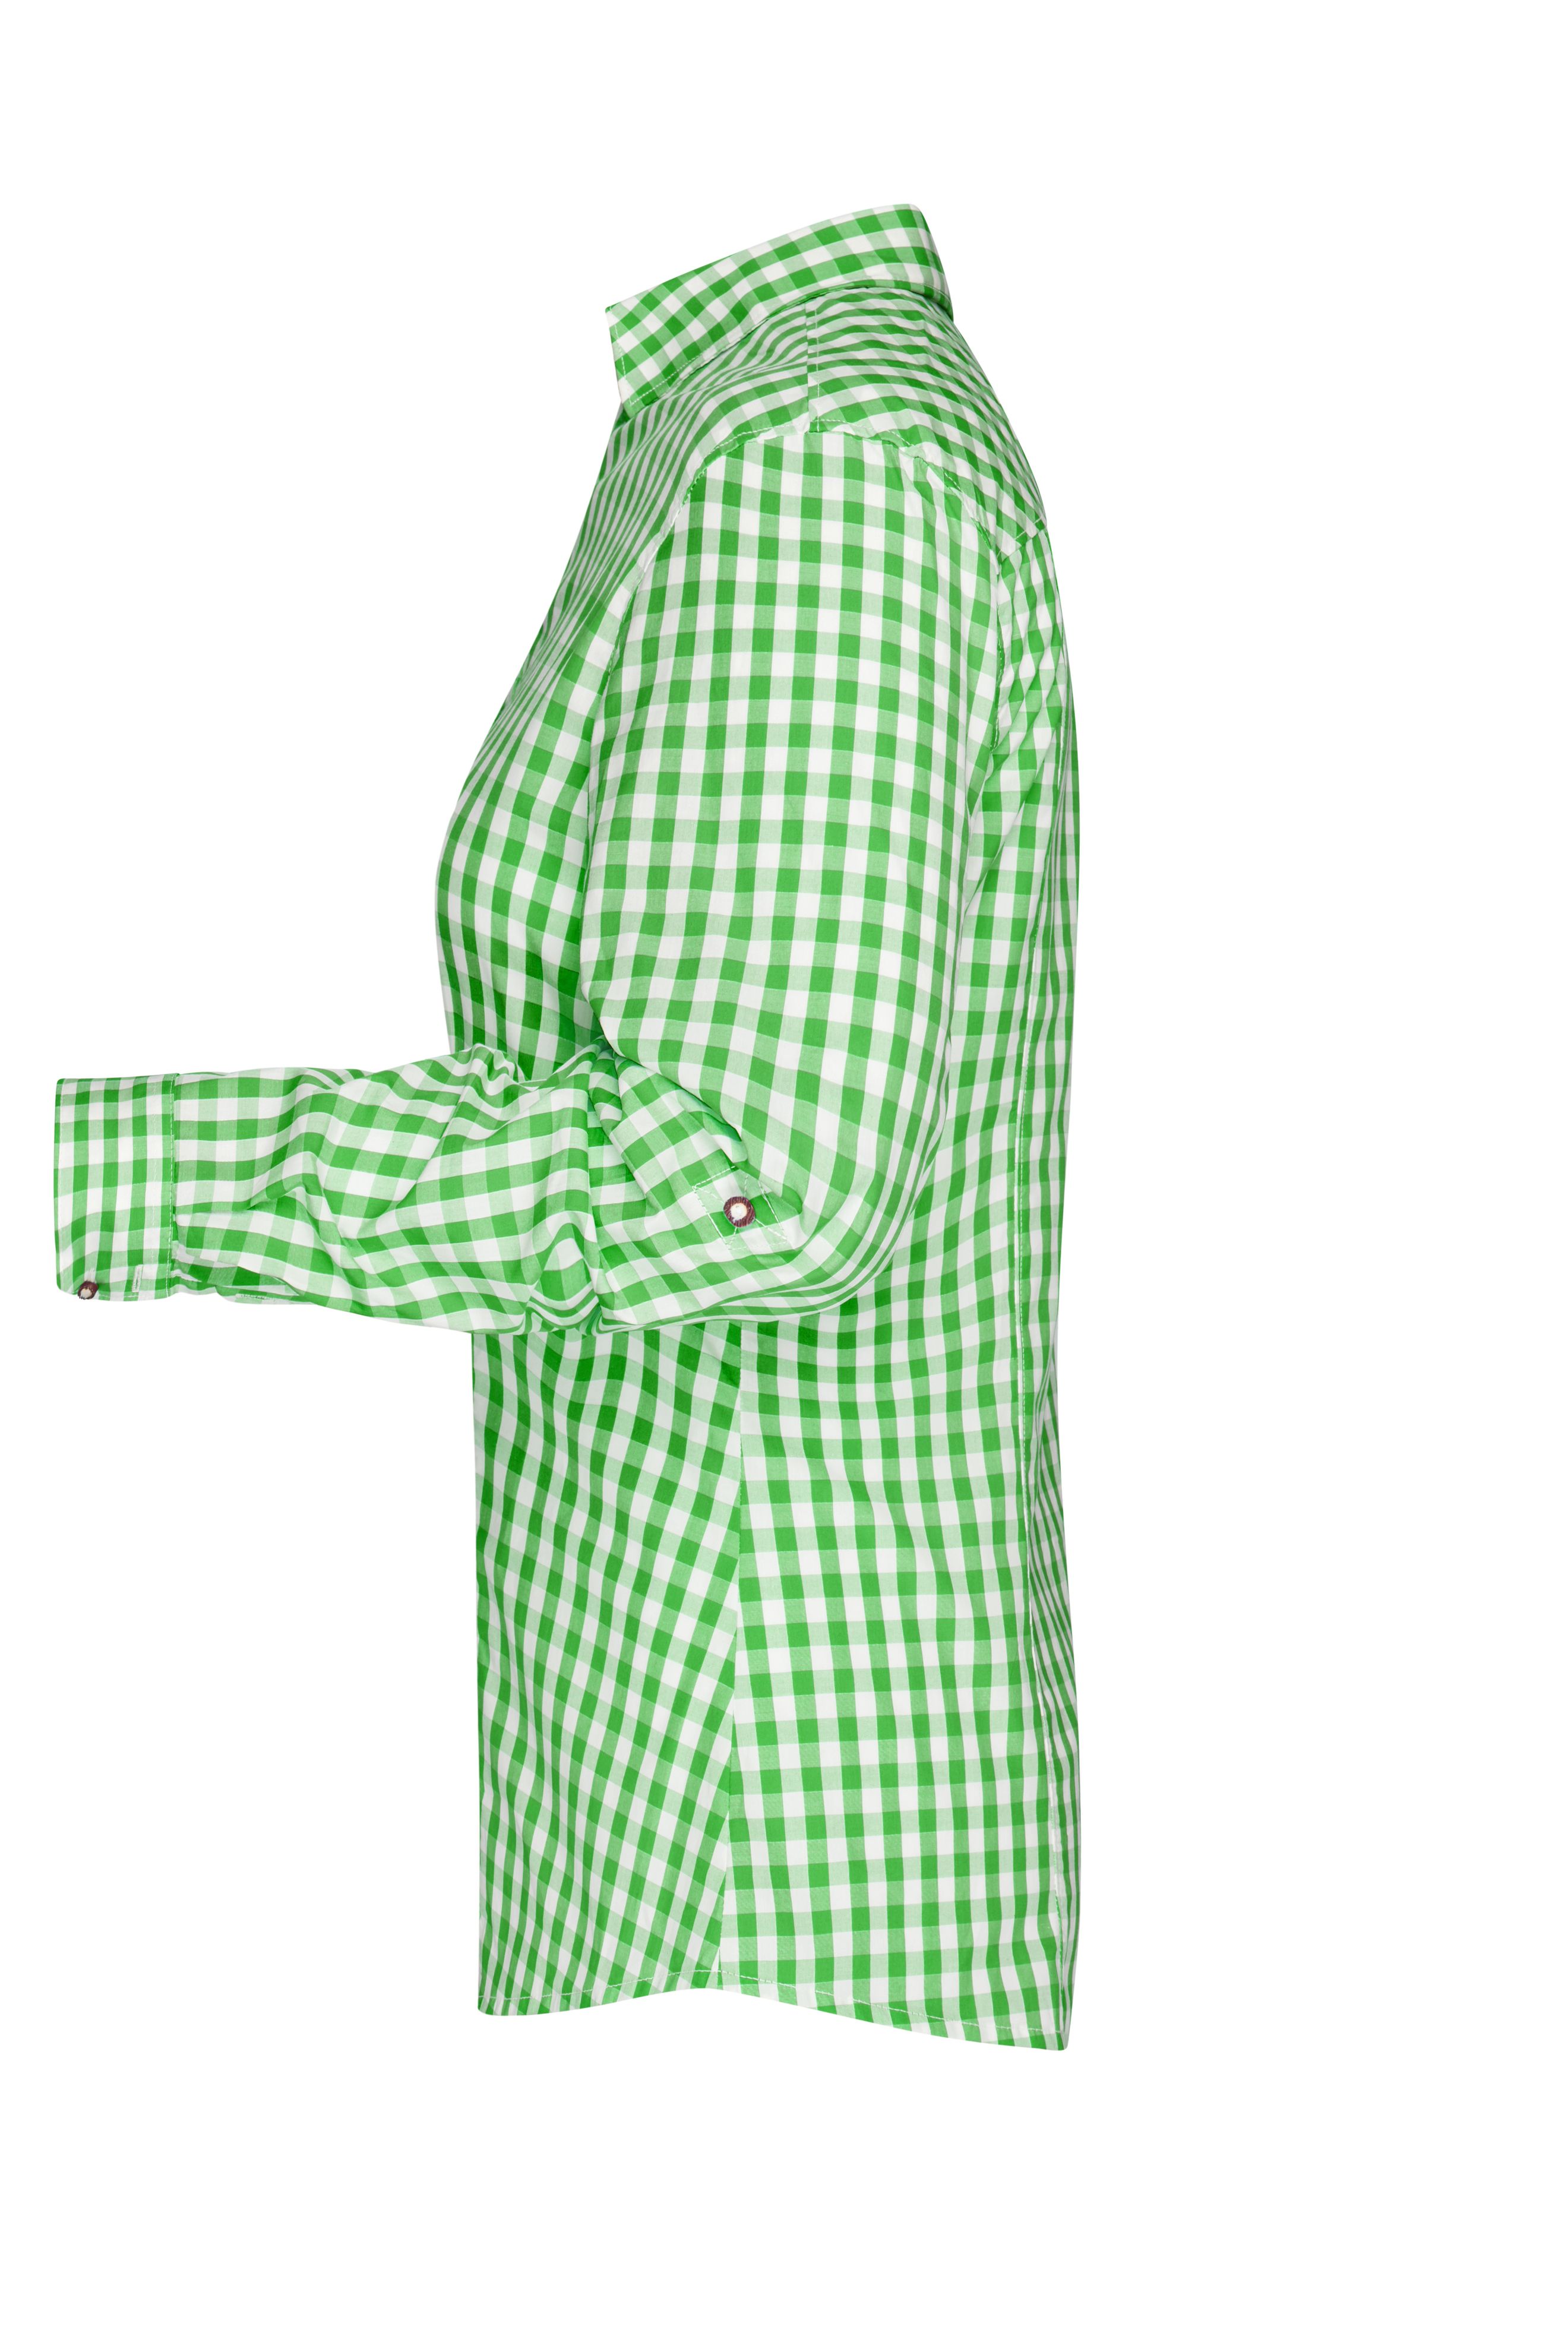 Ladies' Traditional Shirt JN637 Damen-Bluse und Herren-Hemd im klassischen Trachtenlook